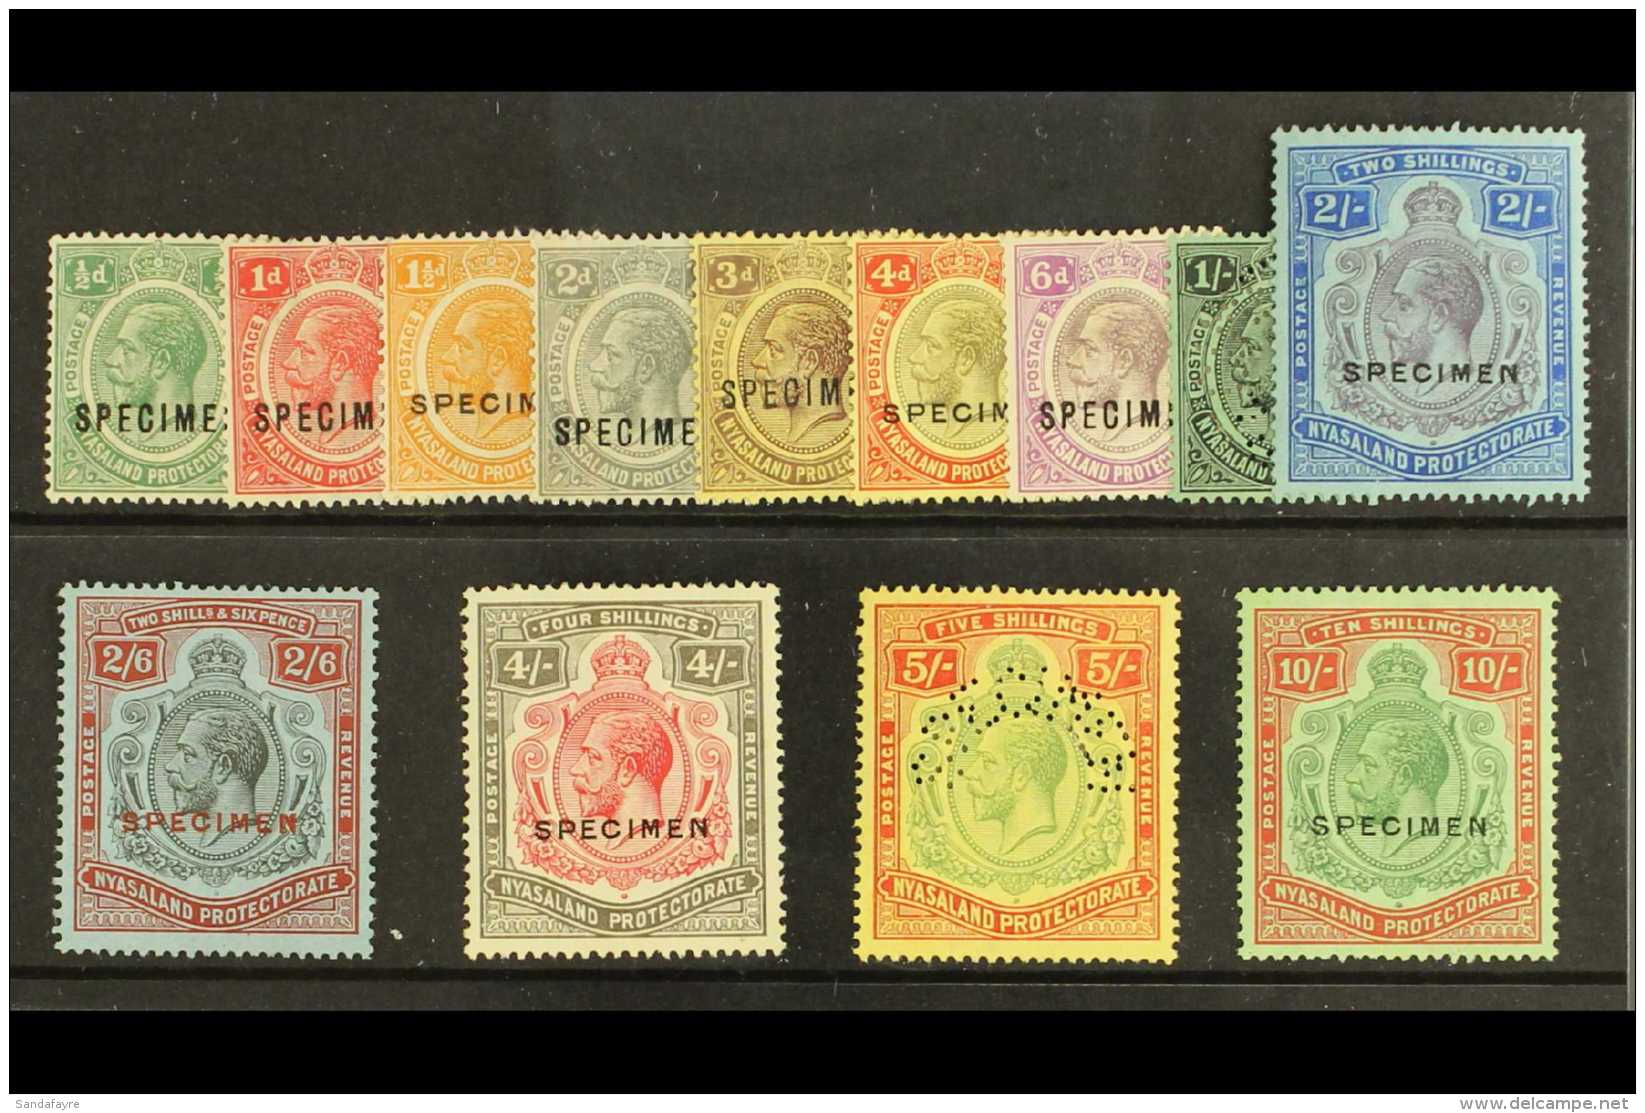 1921 Geo V Complete Set To 10s, Wmk Script CA, Overprinted "Specimen", SG 100/13, Very Fine Mint. (13 Stamps) For... - Nyasaland (1907-1953)